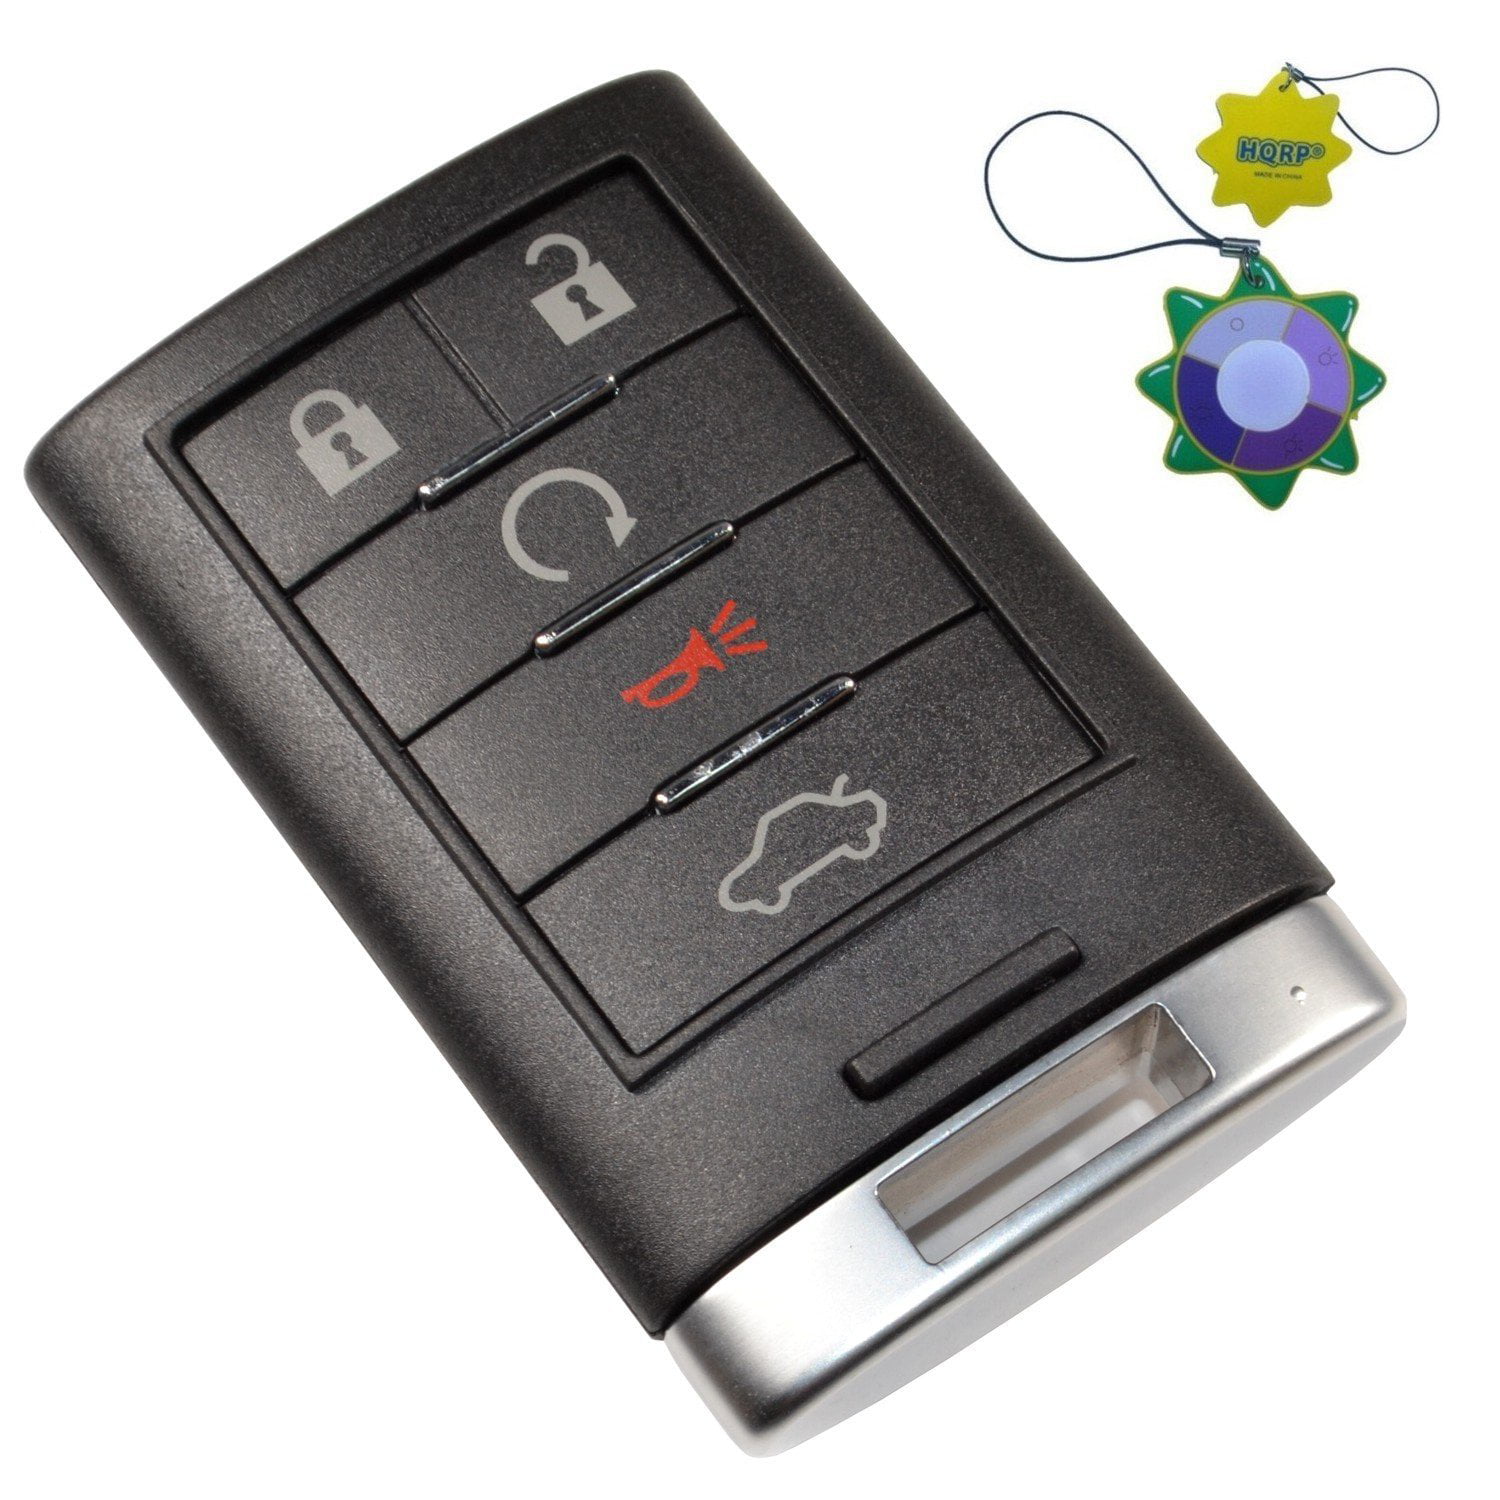 2x Remote Control Car Key Fob for 2010 2011 2012 2013 2014 2015 Cadillac SRX 